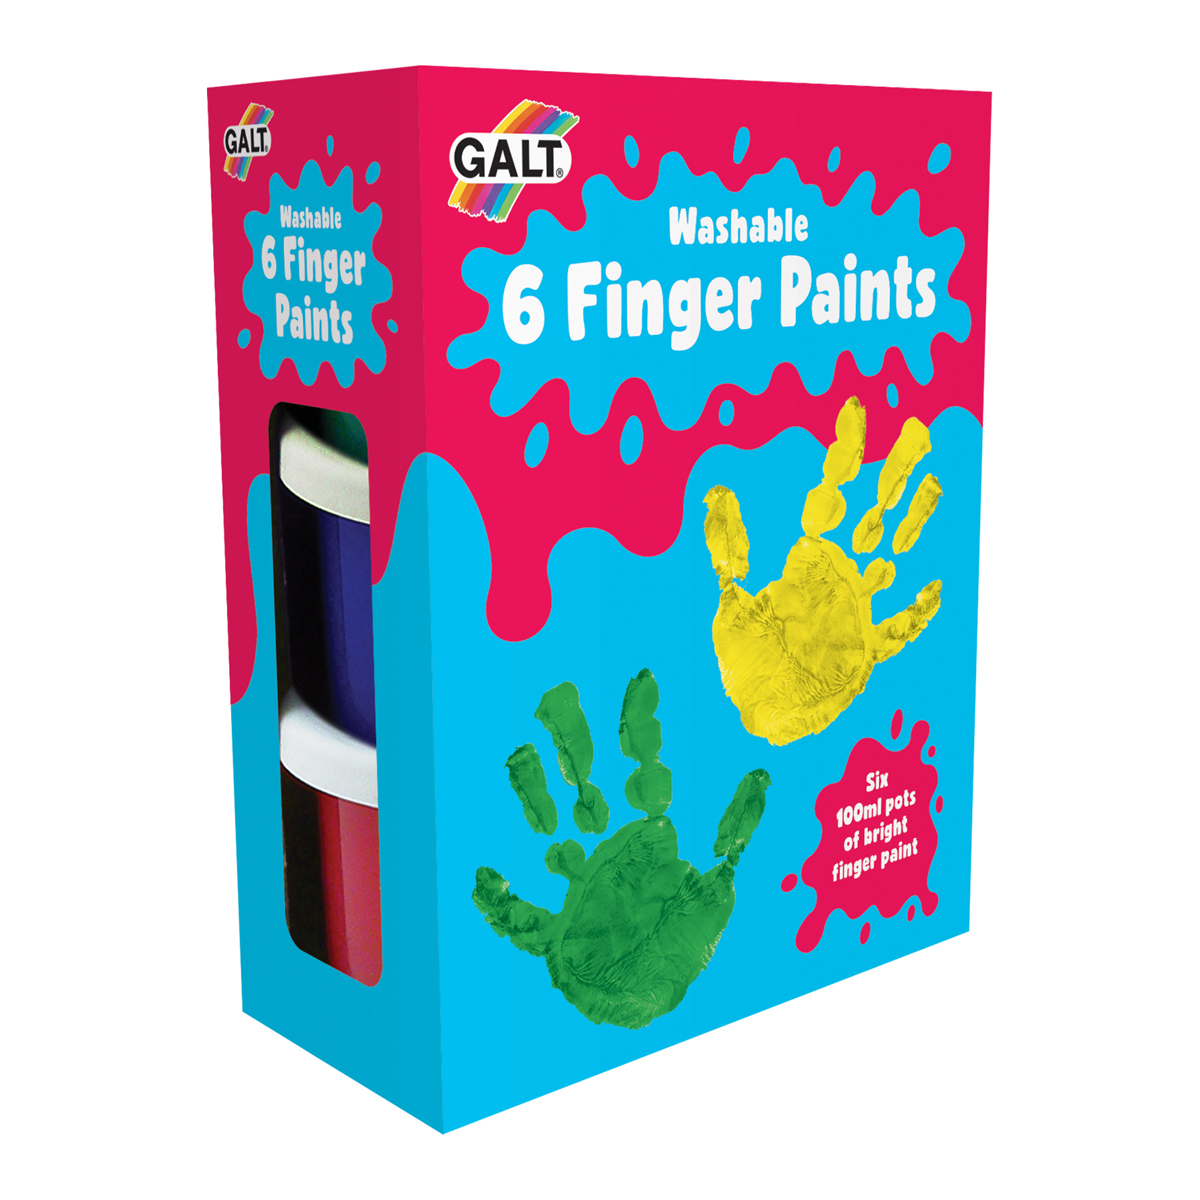  Galt 6 Finger Paints